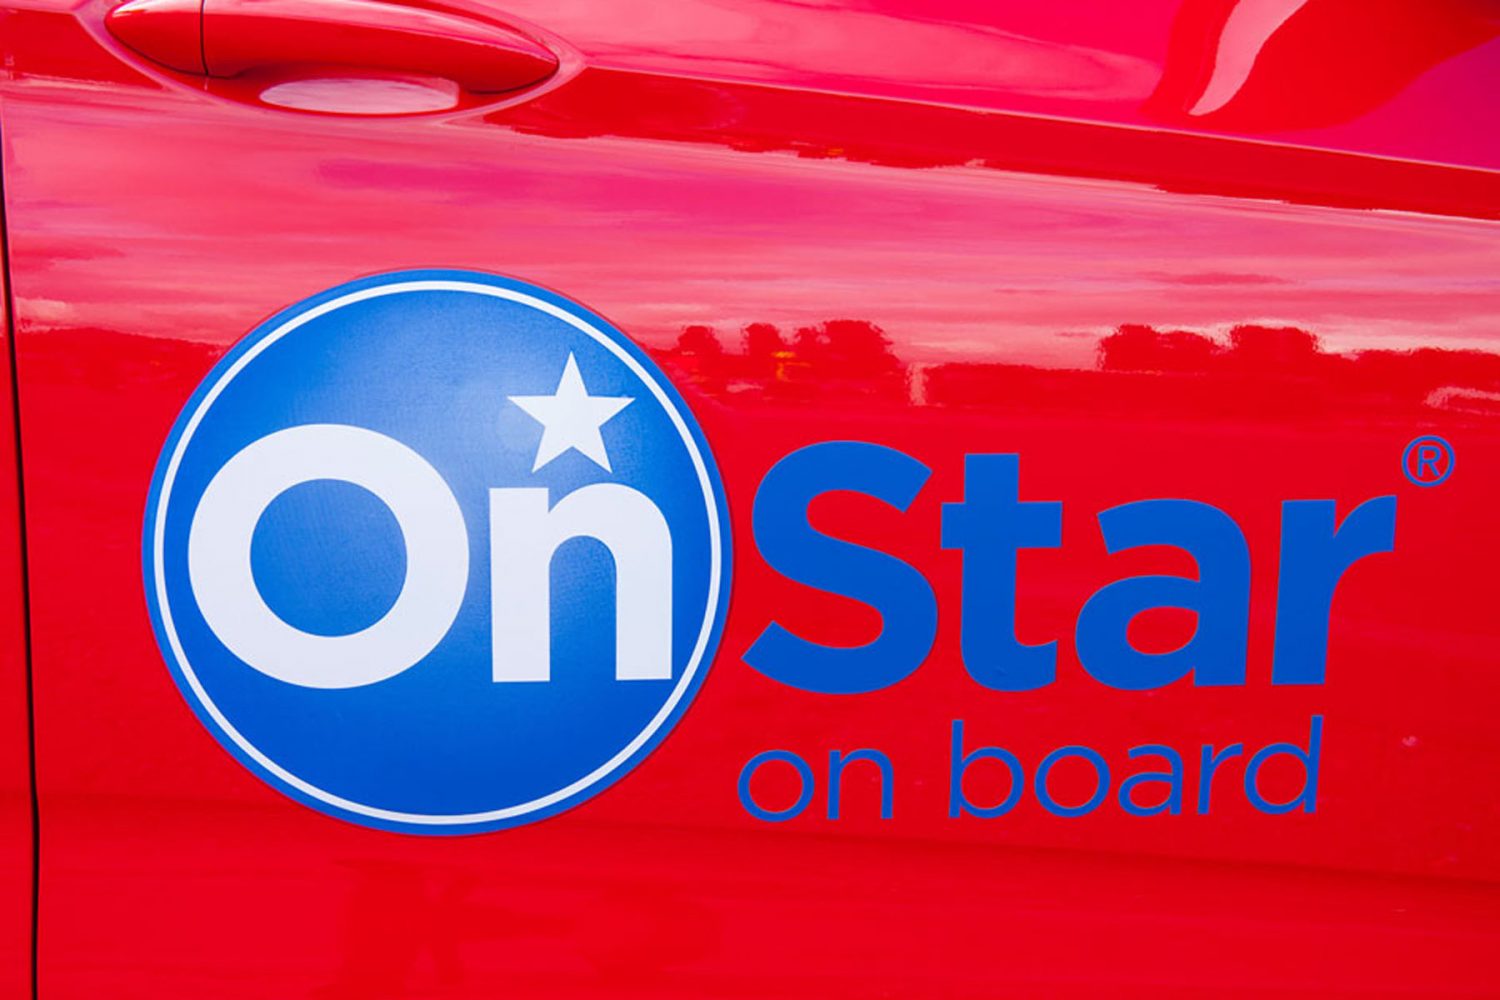 Opel OnStar